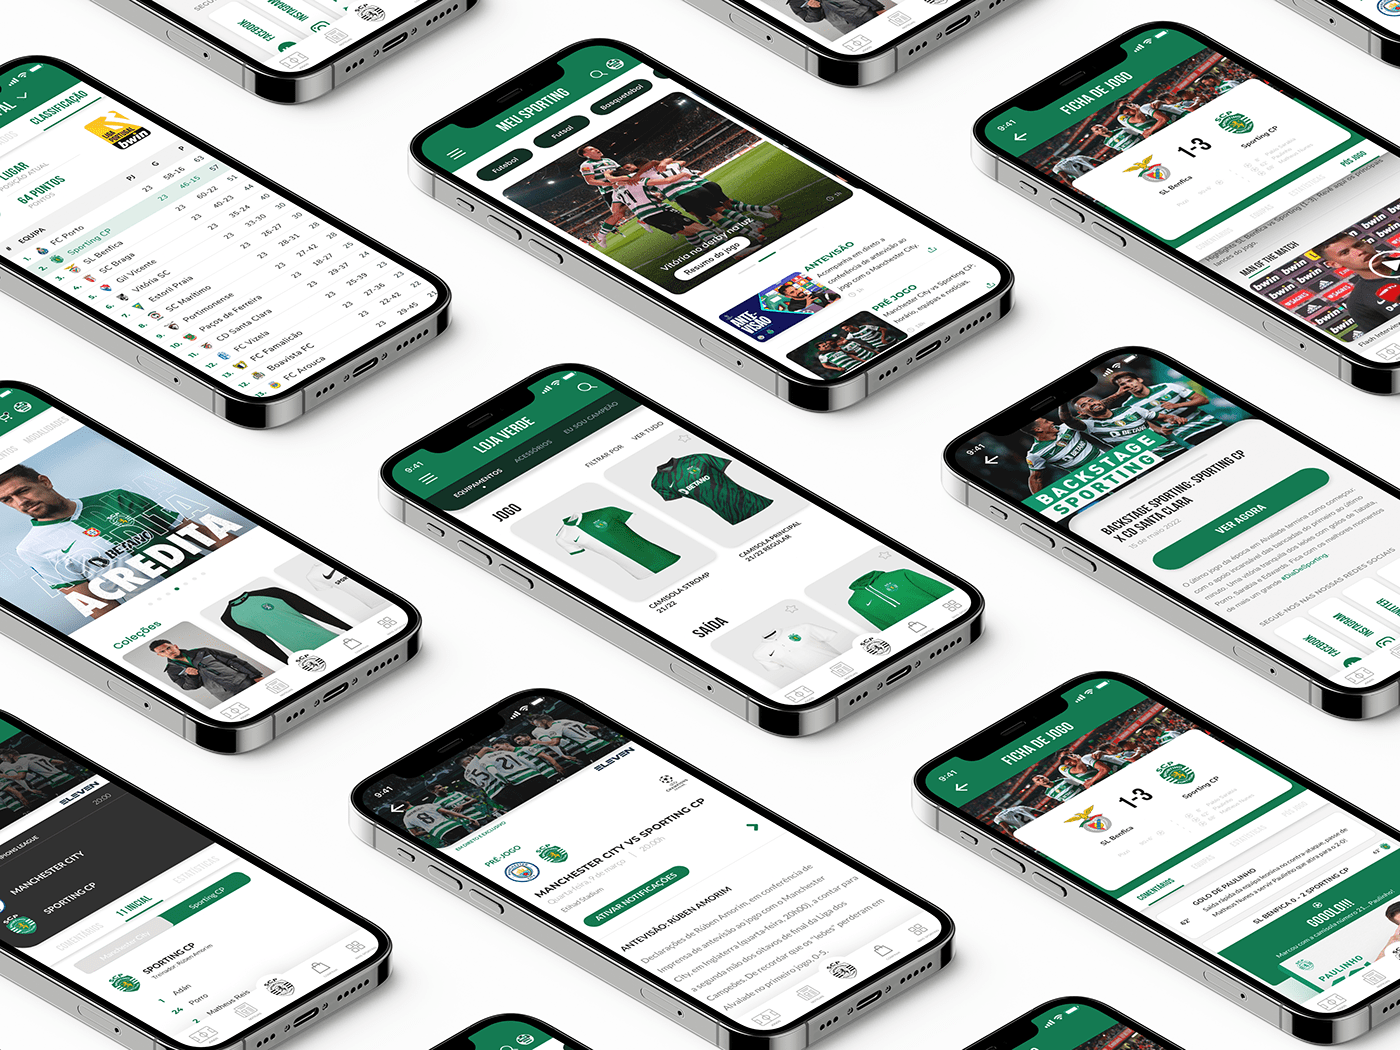 app design application design design de interação football football app Sporting CP Sports App ui design uiuxdesign